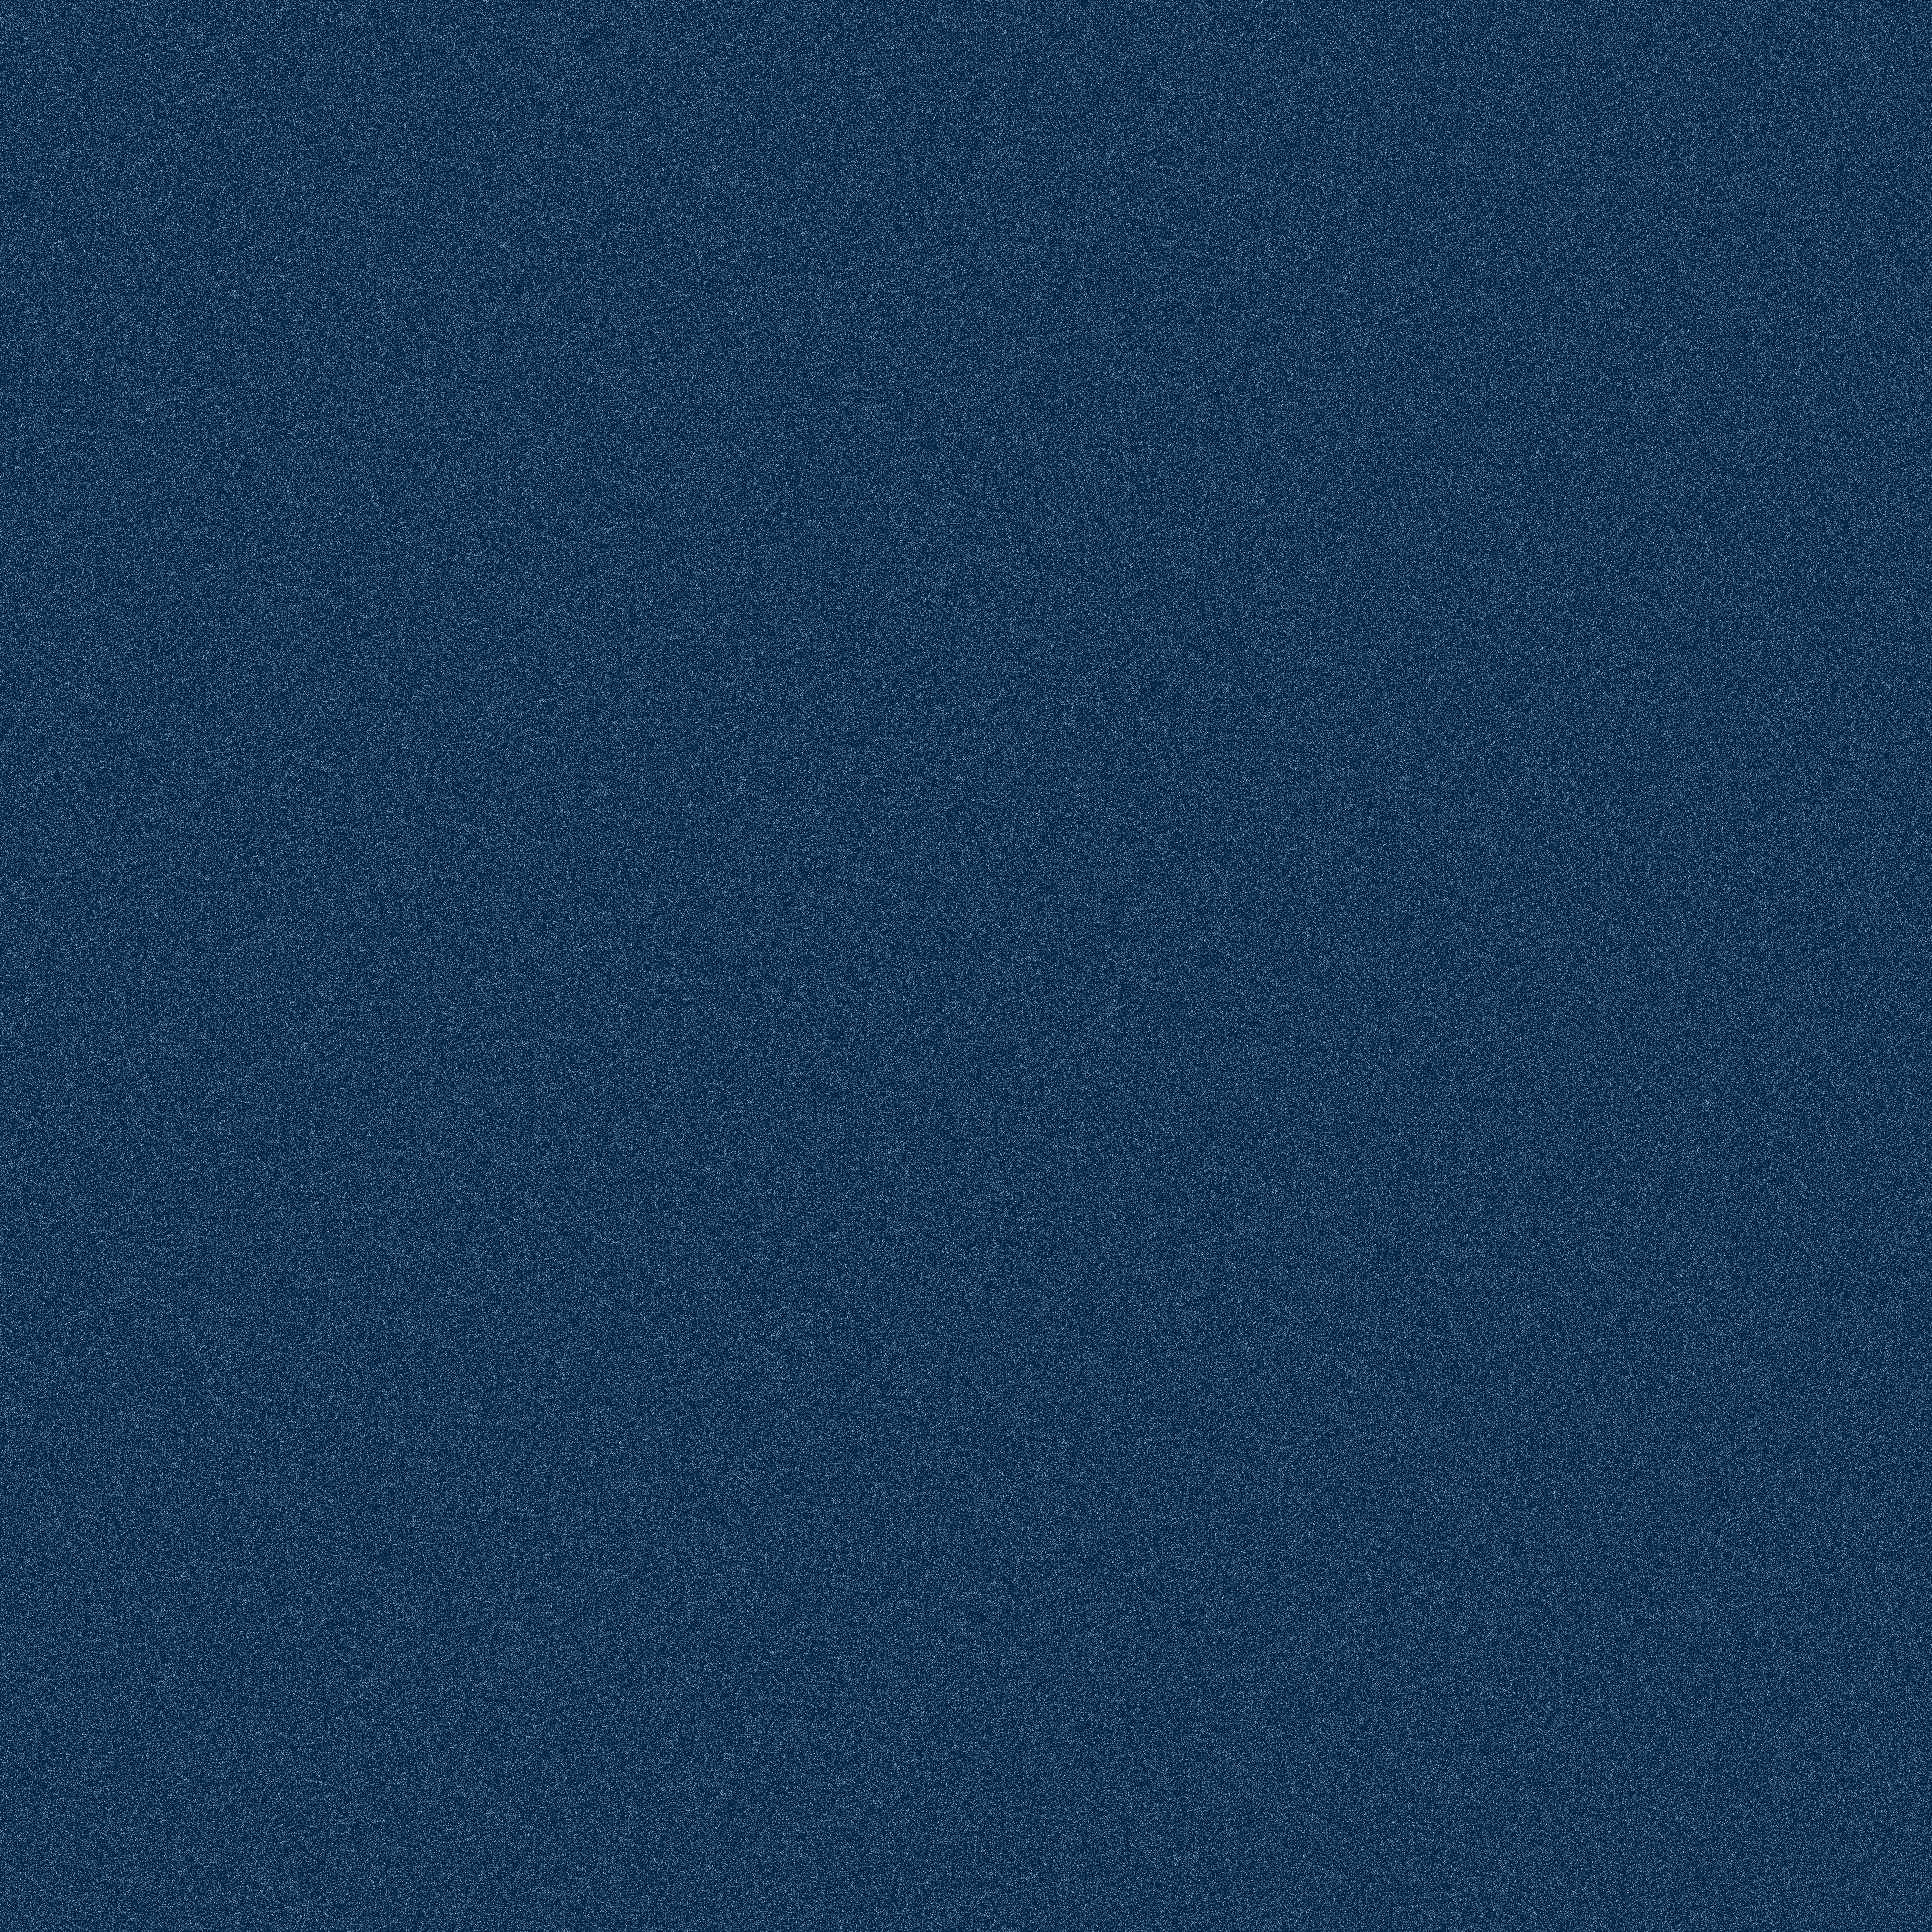 Navy blue Noise background texture. PNG:Public Domain. ICON PARK